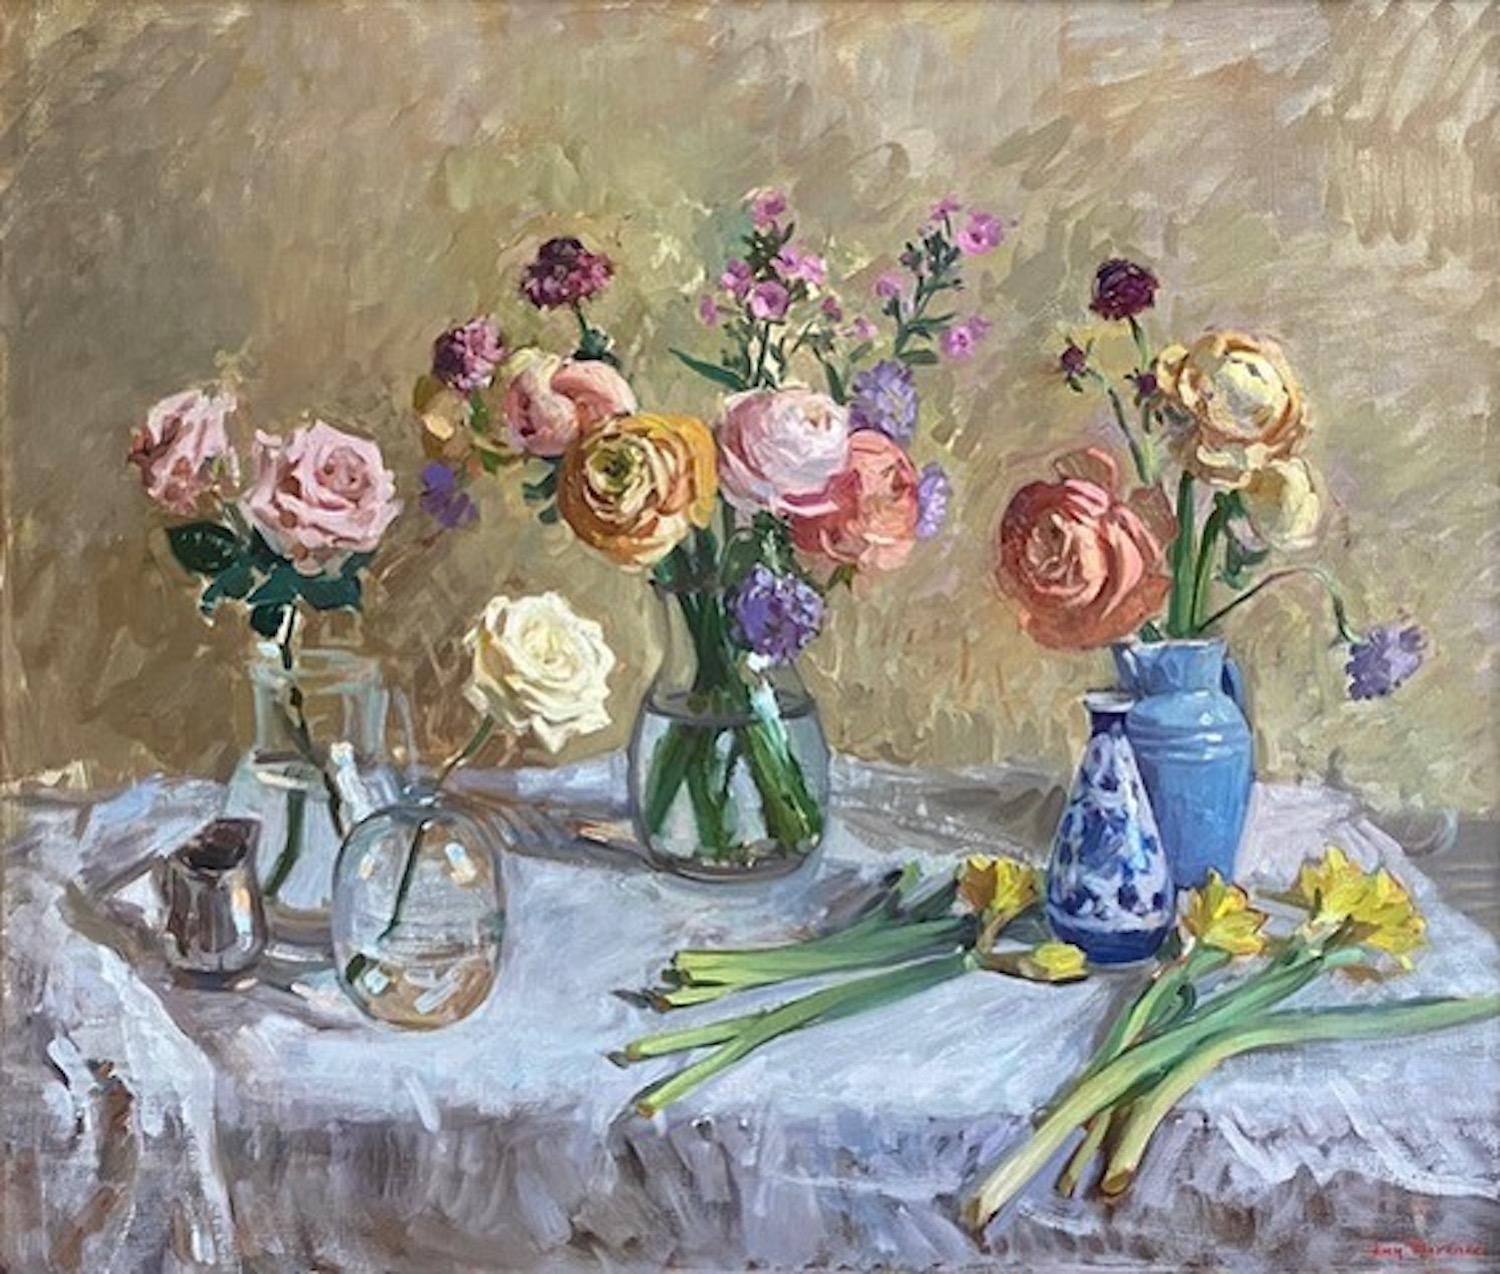 Amy Florence Interior Painting – "Ranunkeln und Rosen" helles zeitgenössisches impressionistisches Blumenstillleben